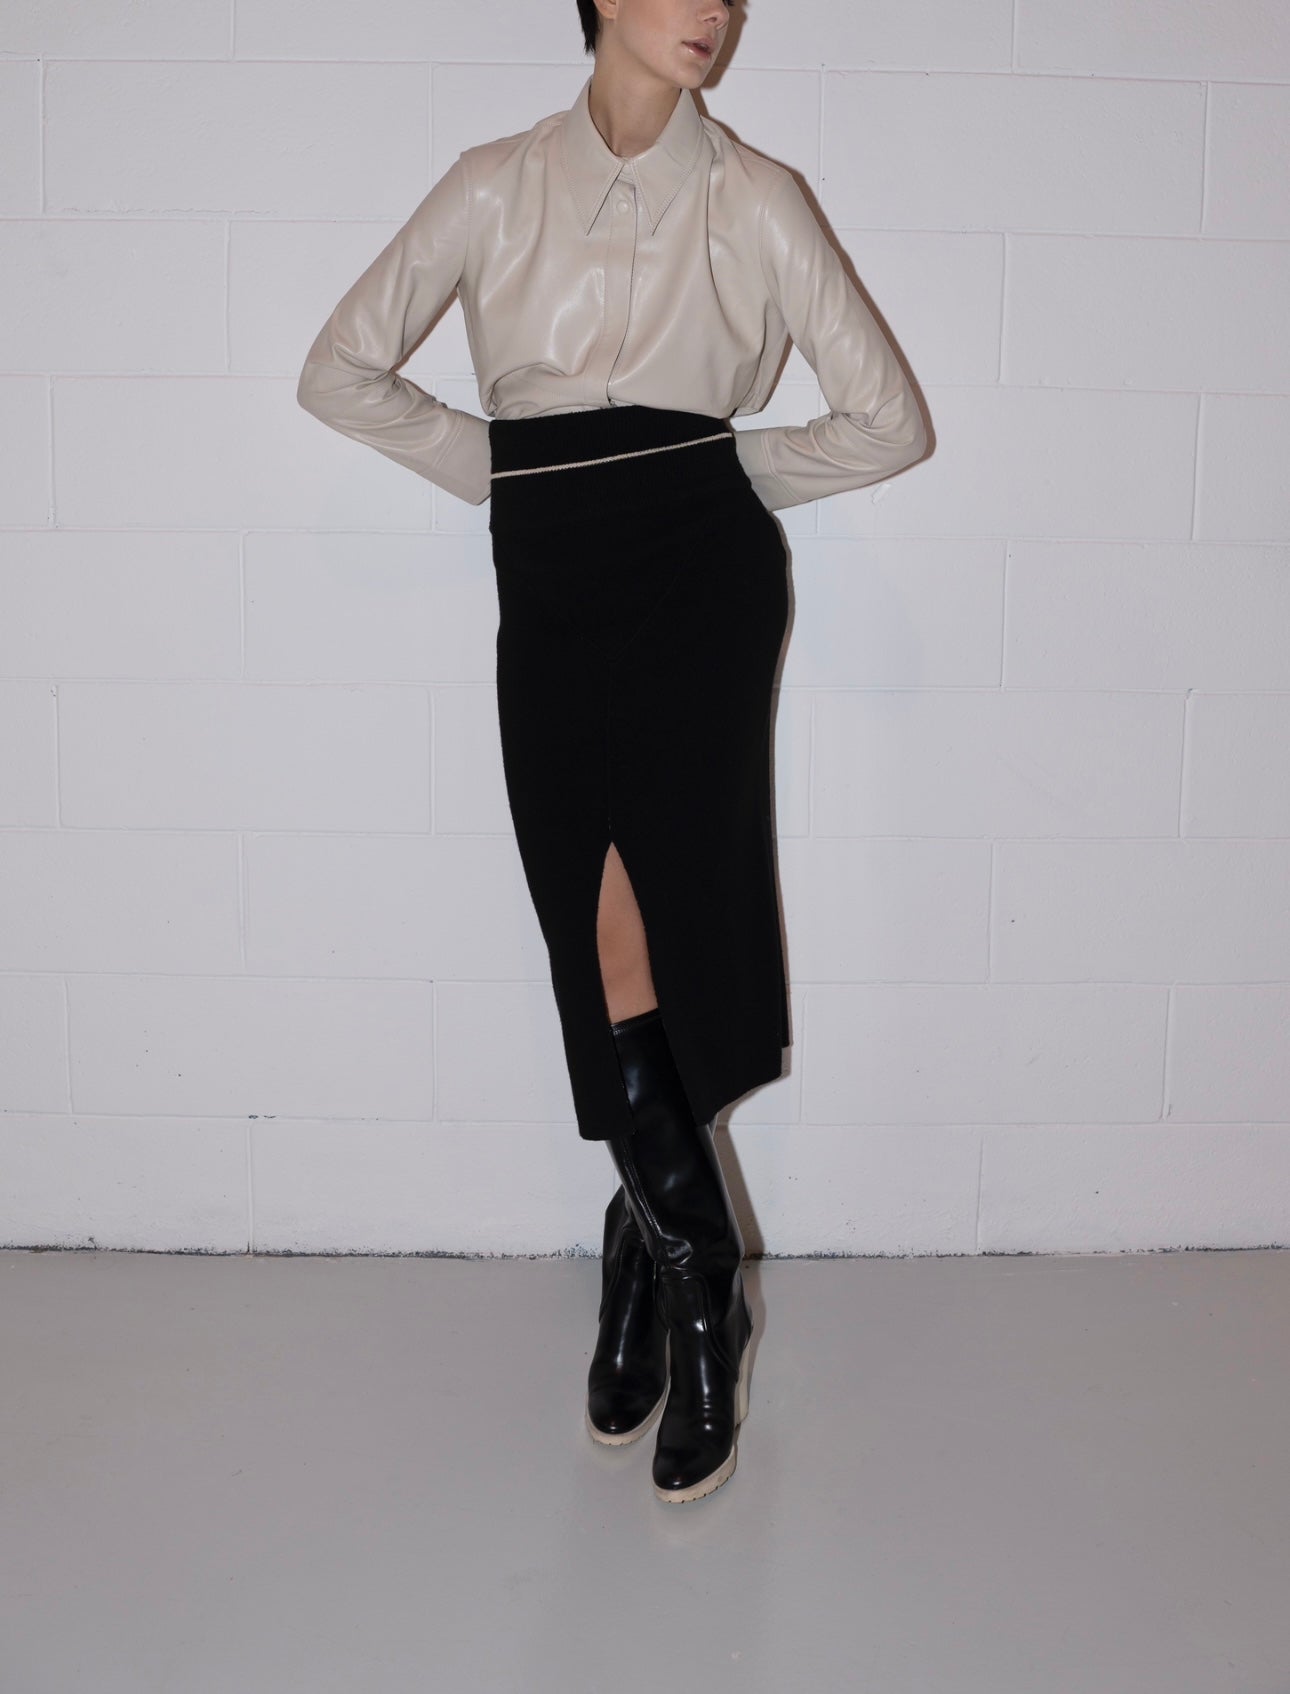 Tricot Longuette Skirt